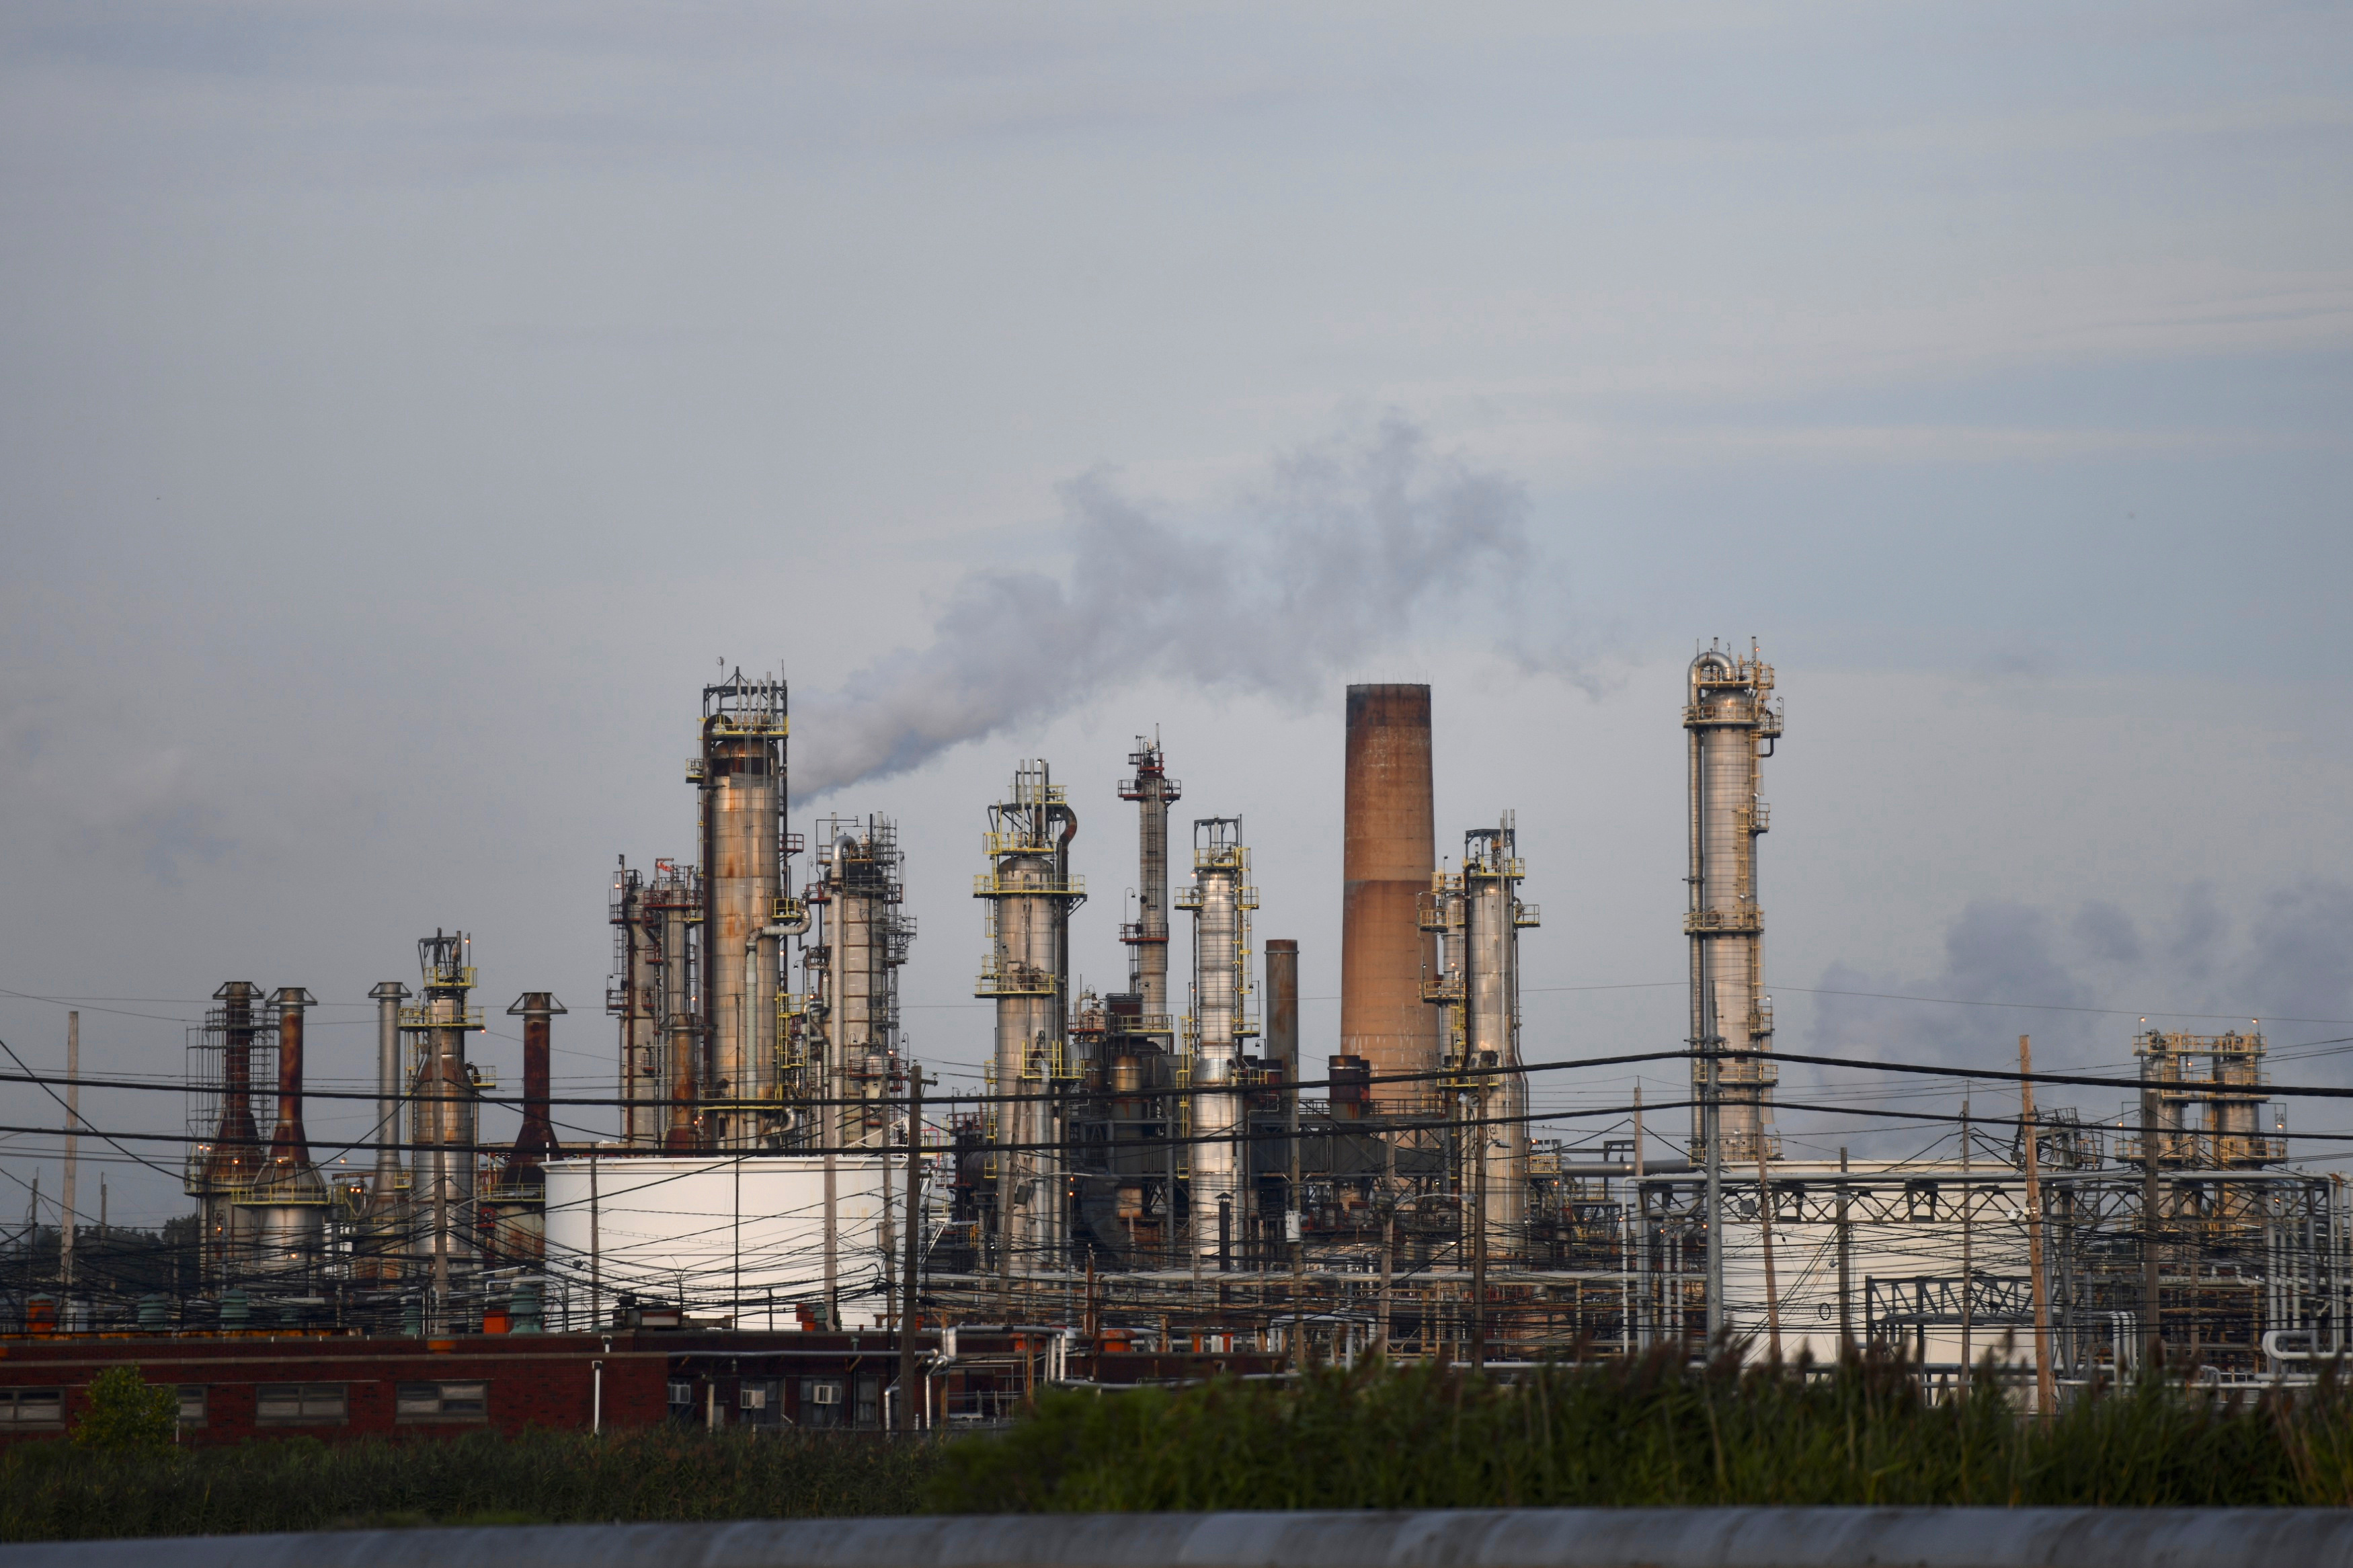 Smoke rises from oil refinery stacks at Philadelphia Energy Solutions plant in Philadelphia